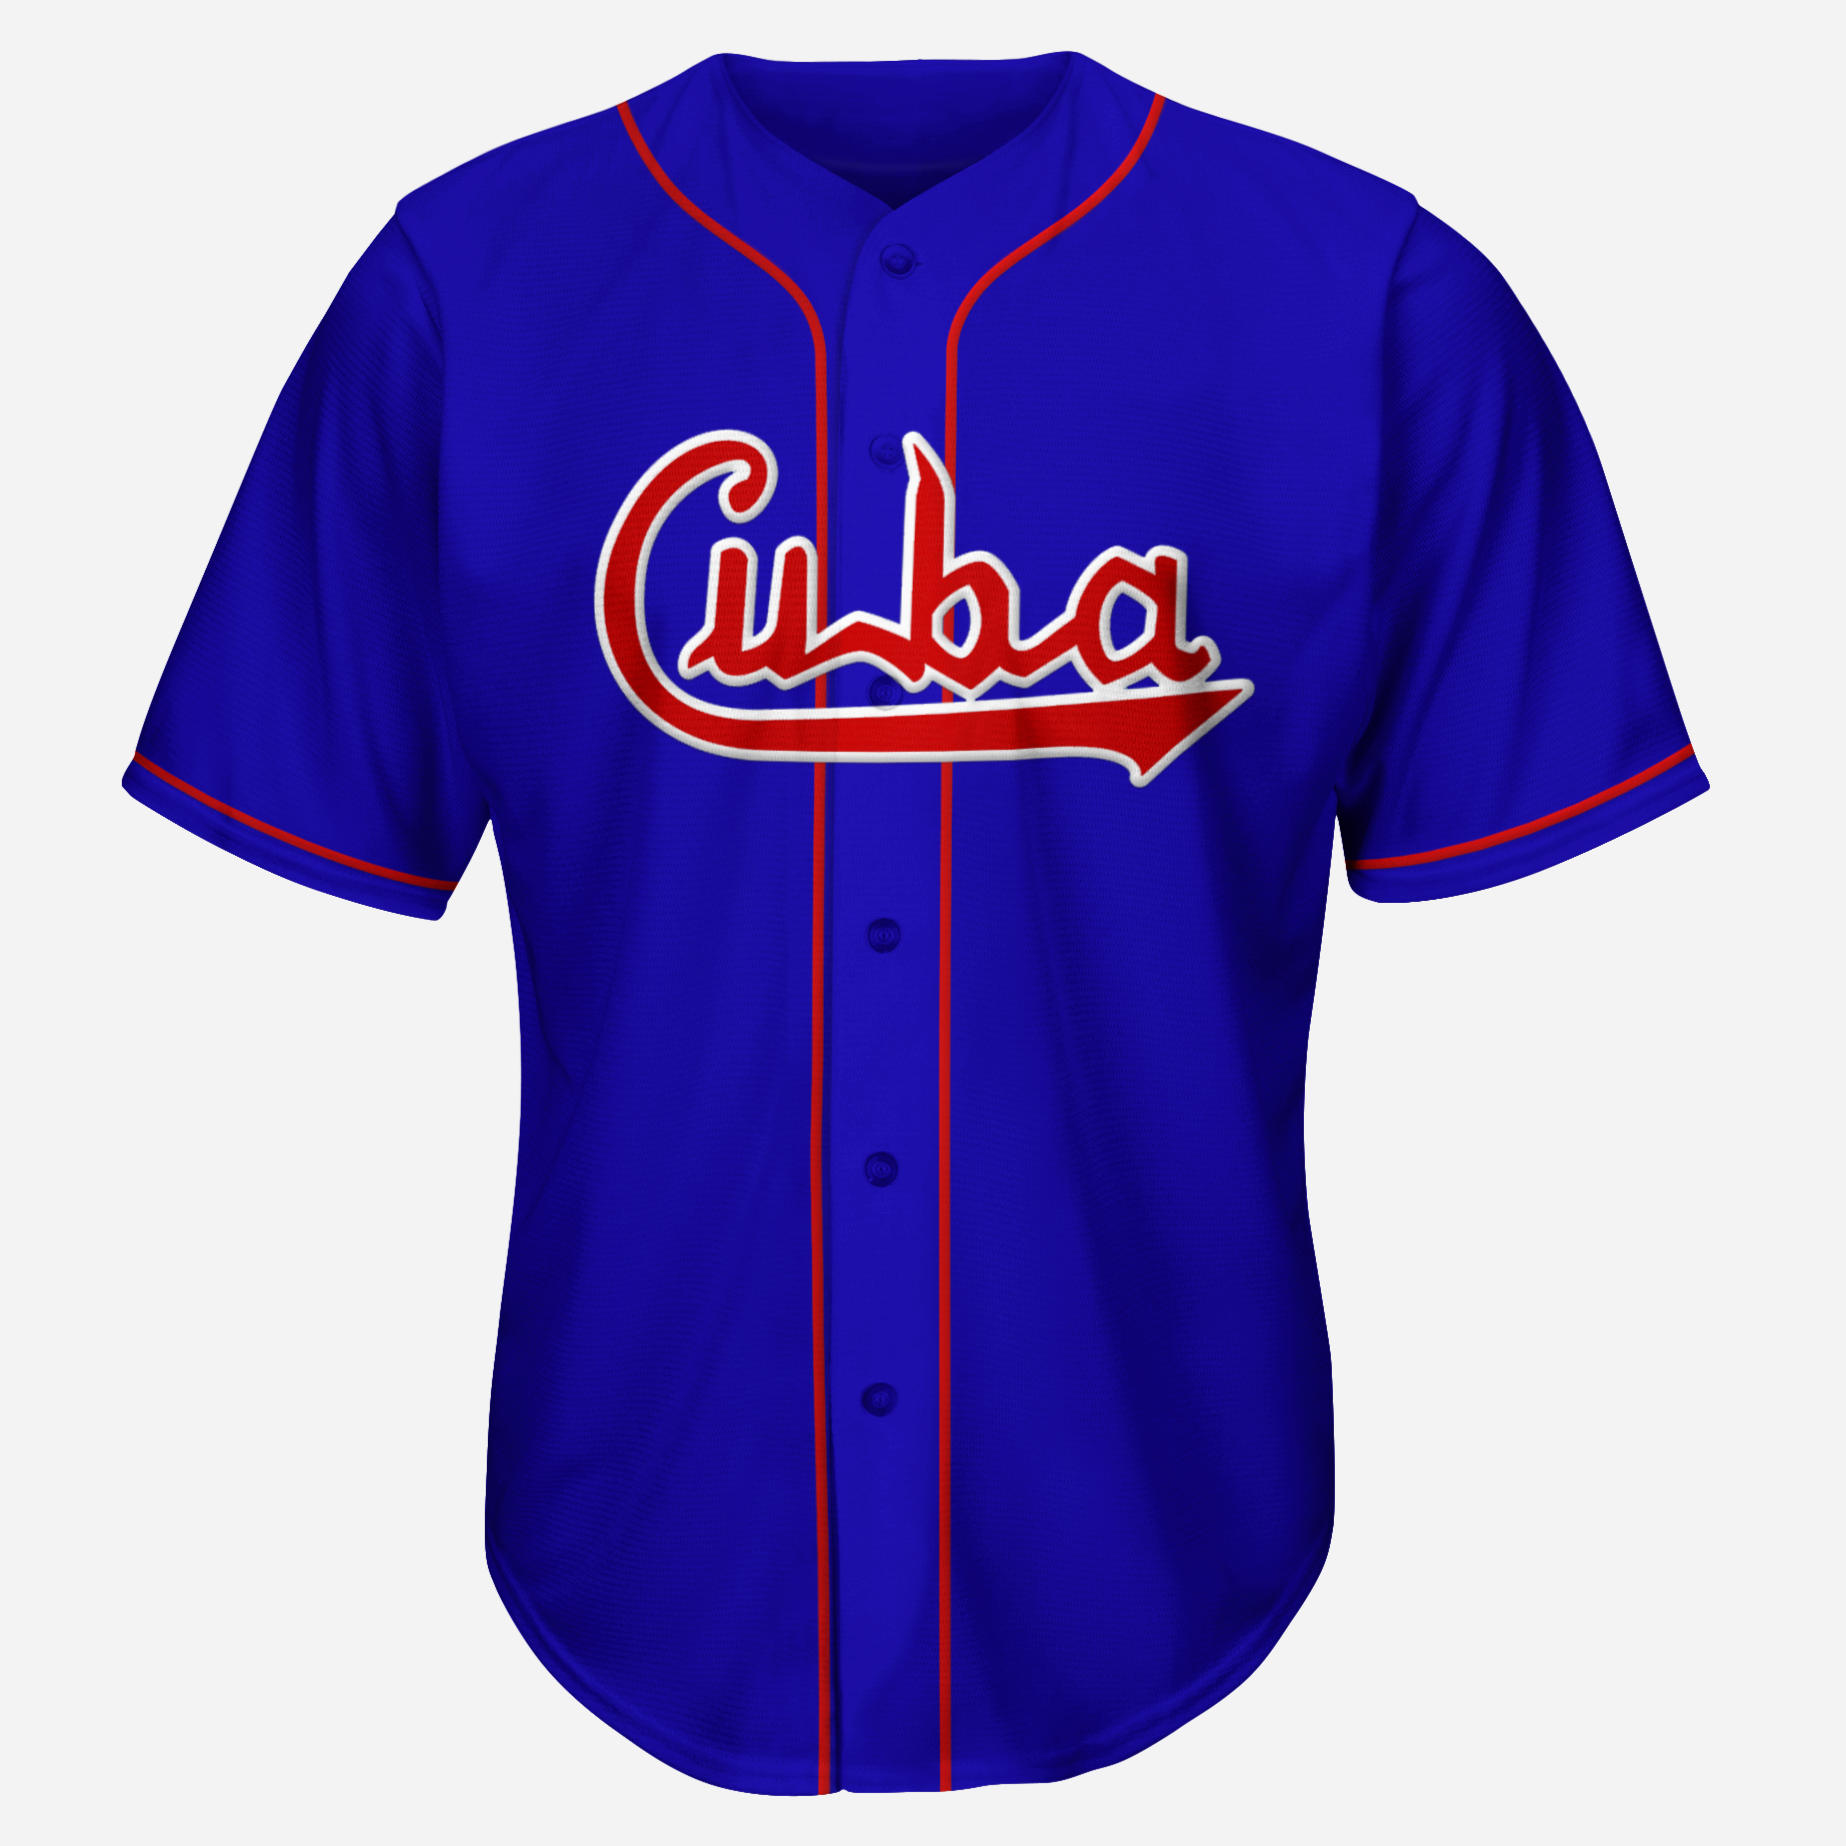 Cuba Baseball Jersey - Blue - 2XL - Royal Retros